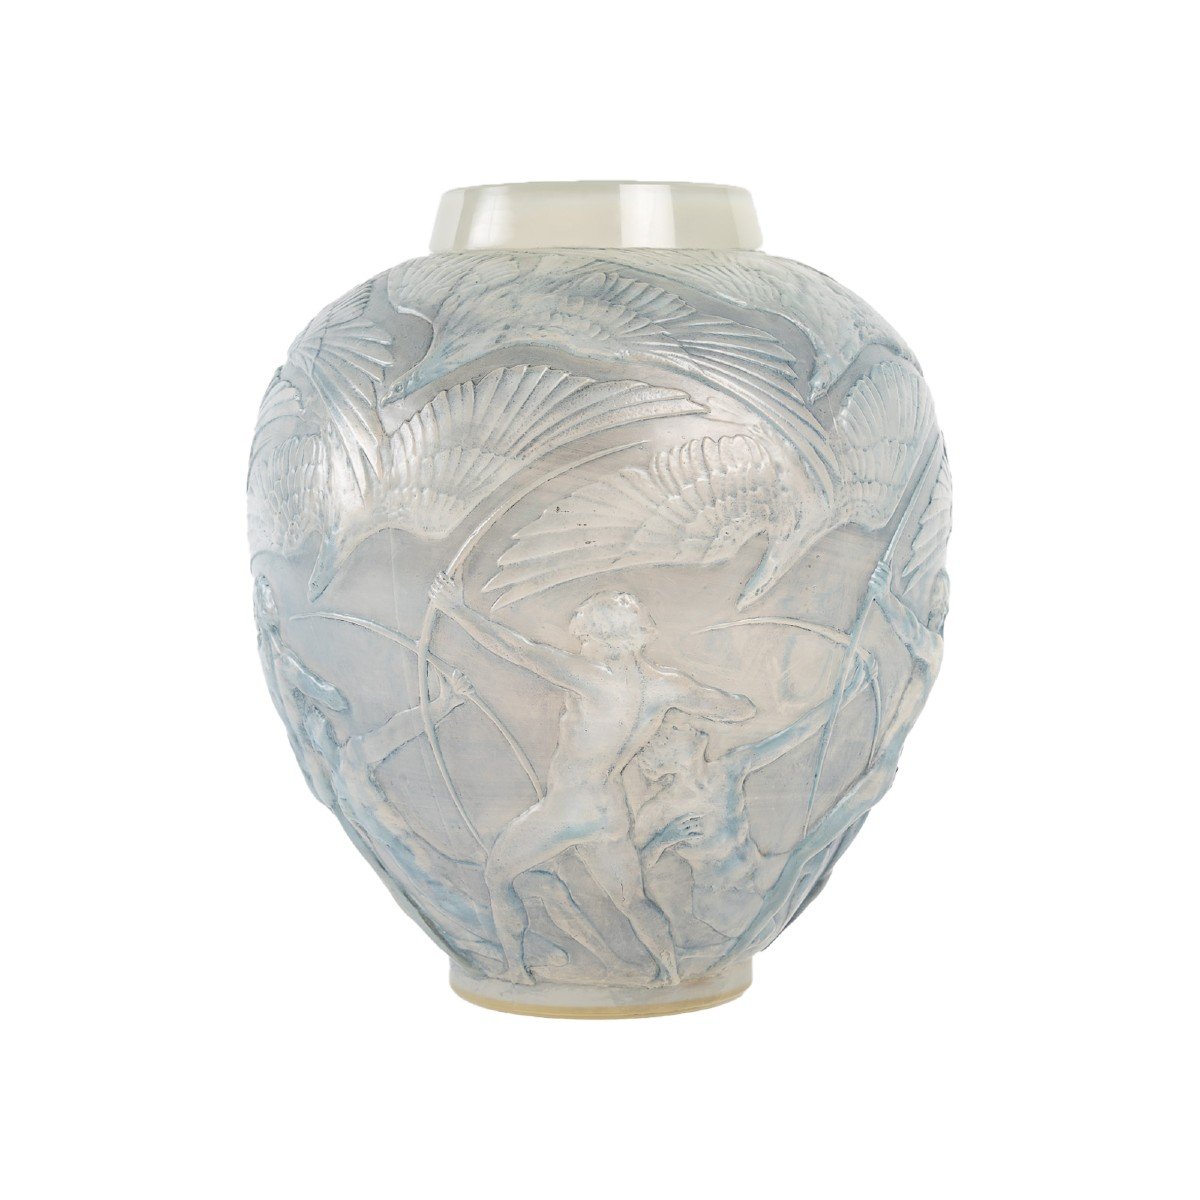 René Lalique: "archers" Opalescent Vase